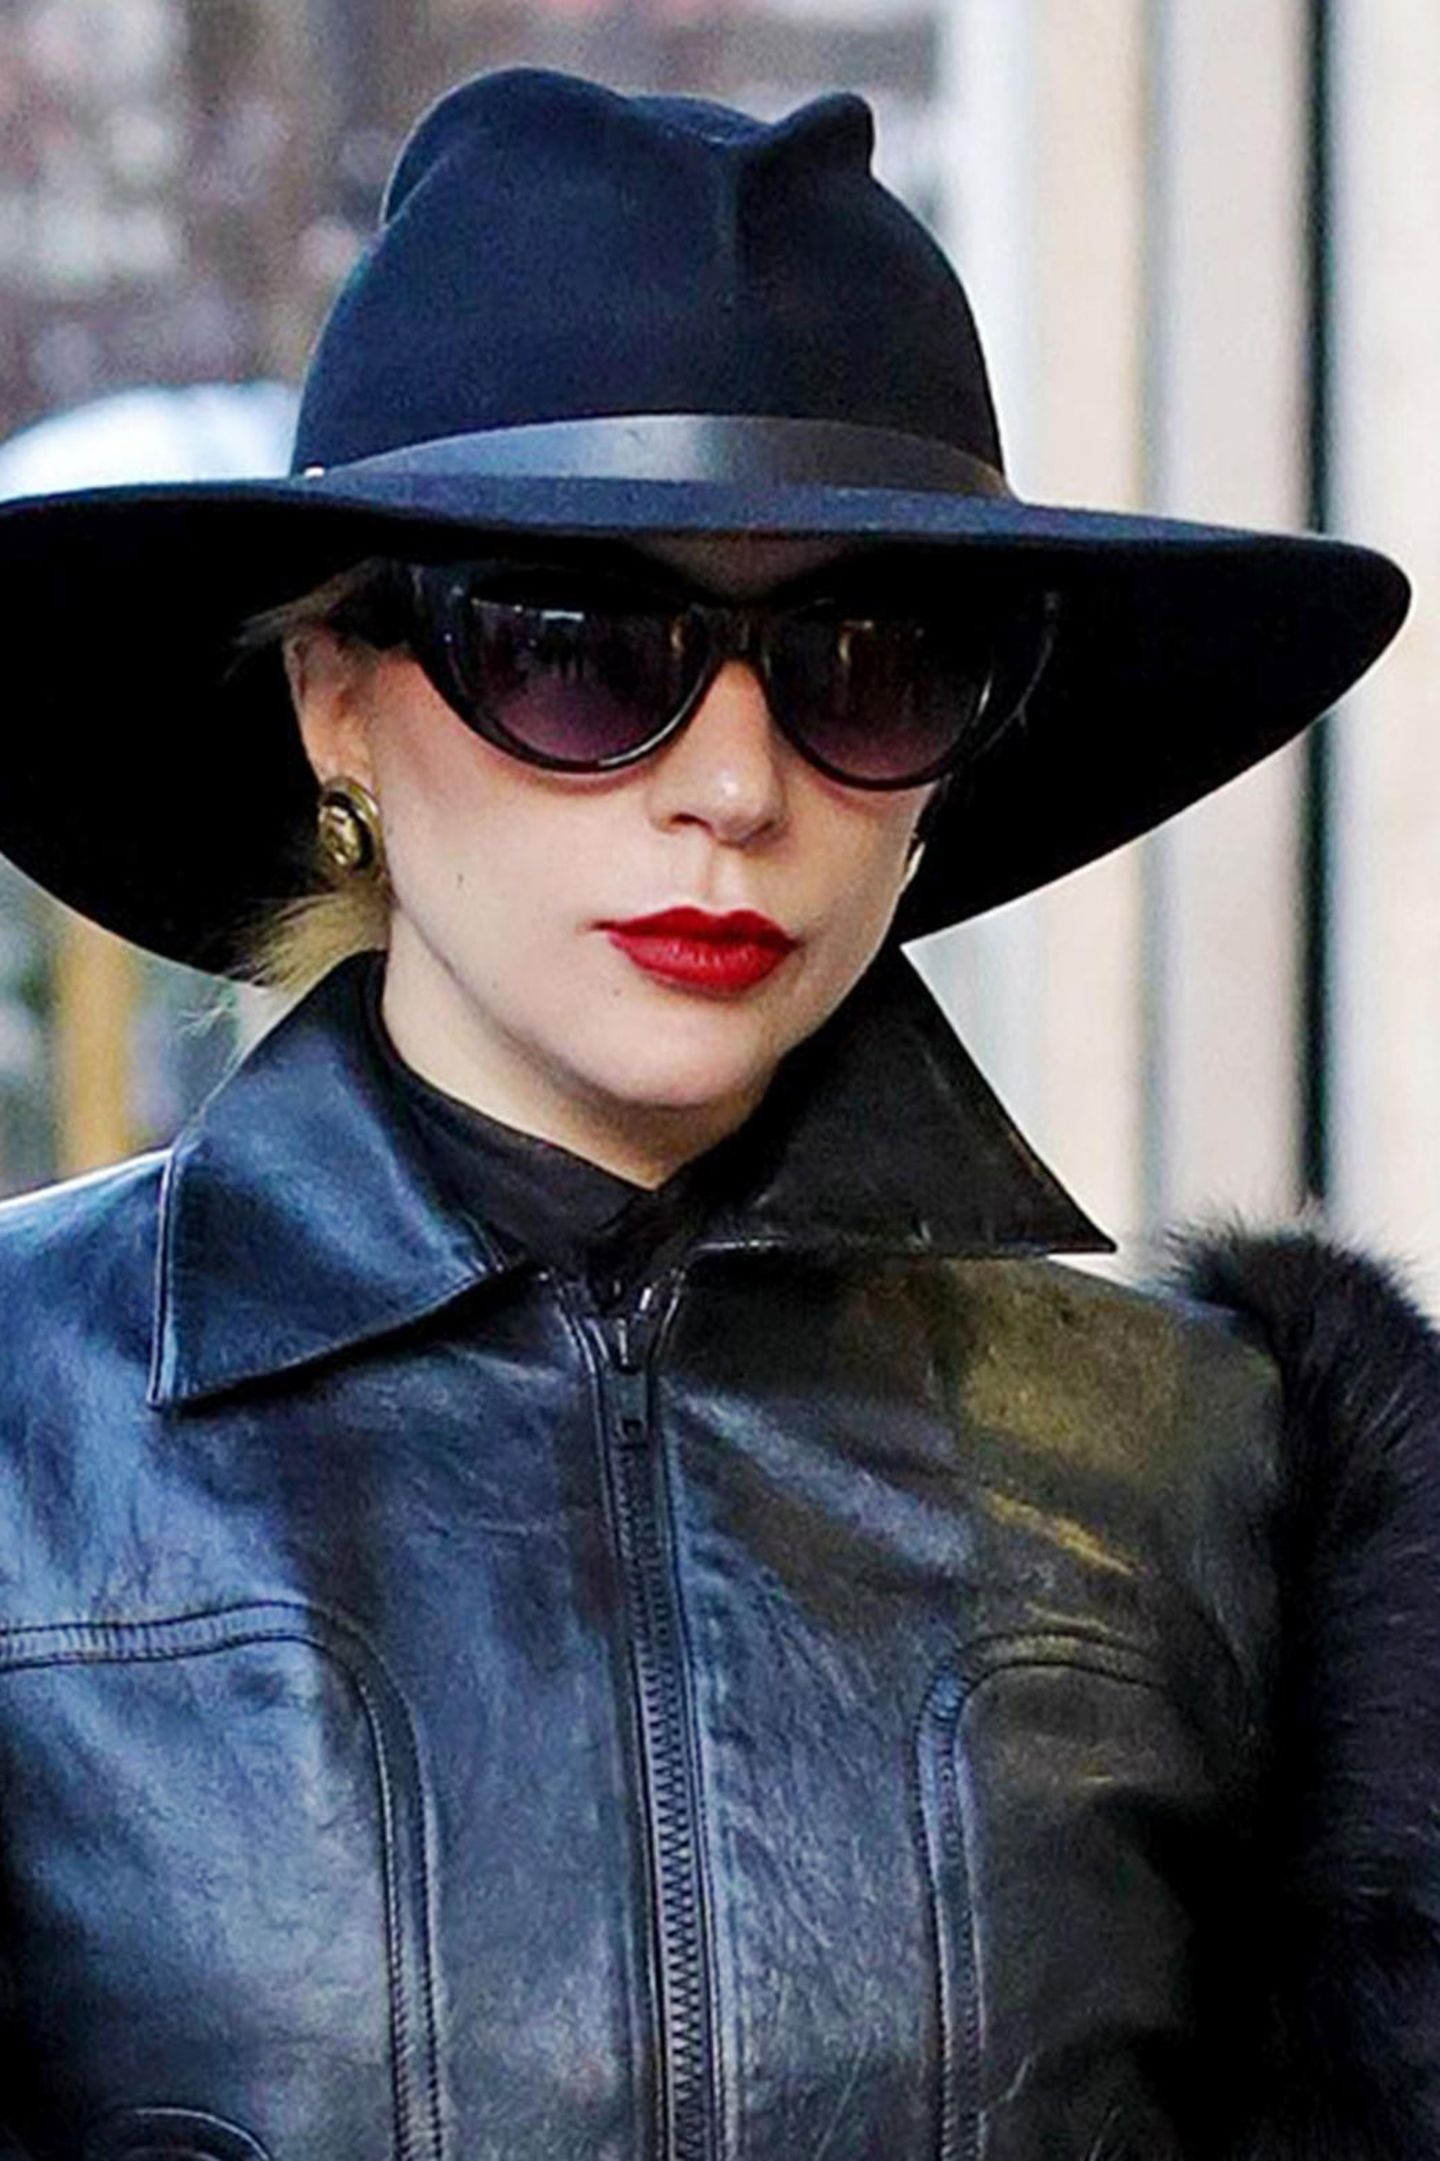 In Mailand setzt Lady Gaga nämlich auf ein komplett schwarzes Outfit, inklusive eleganter Sonnenbrille. Vielseitig sind also nicht nur die Outfits der Sängerin, sondern auch ihre Accessoires.